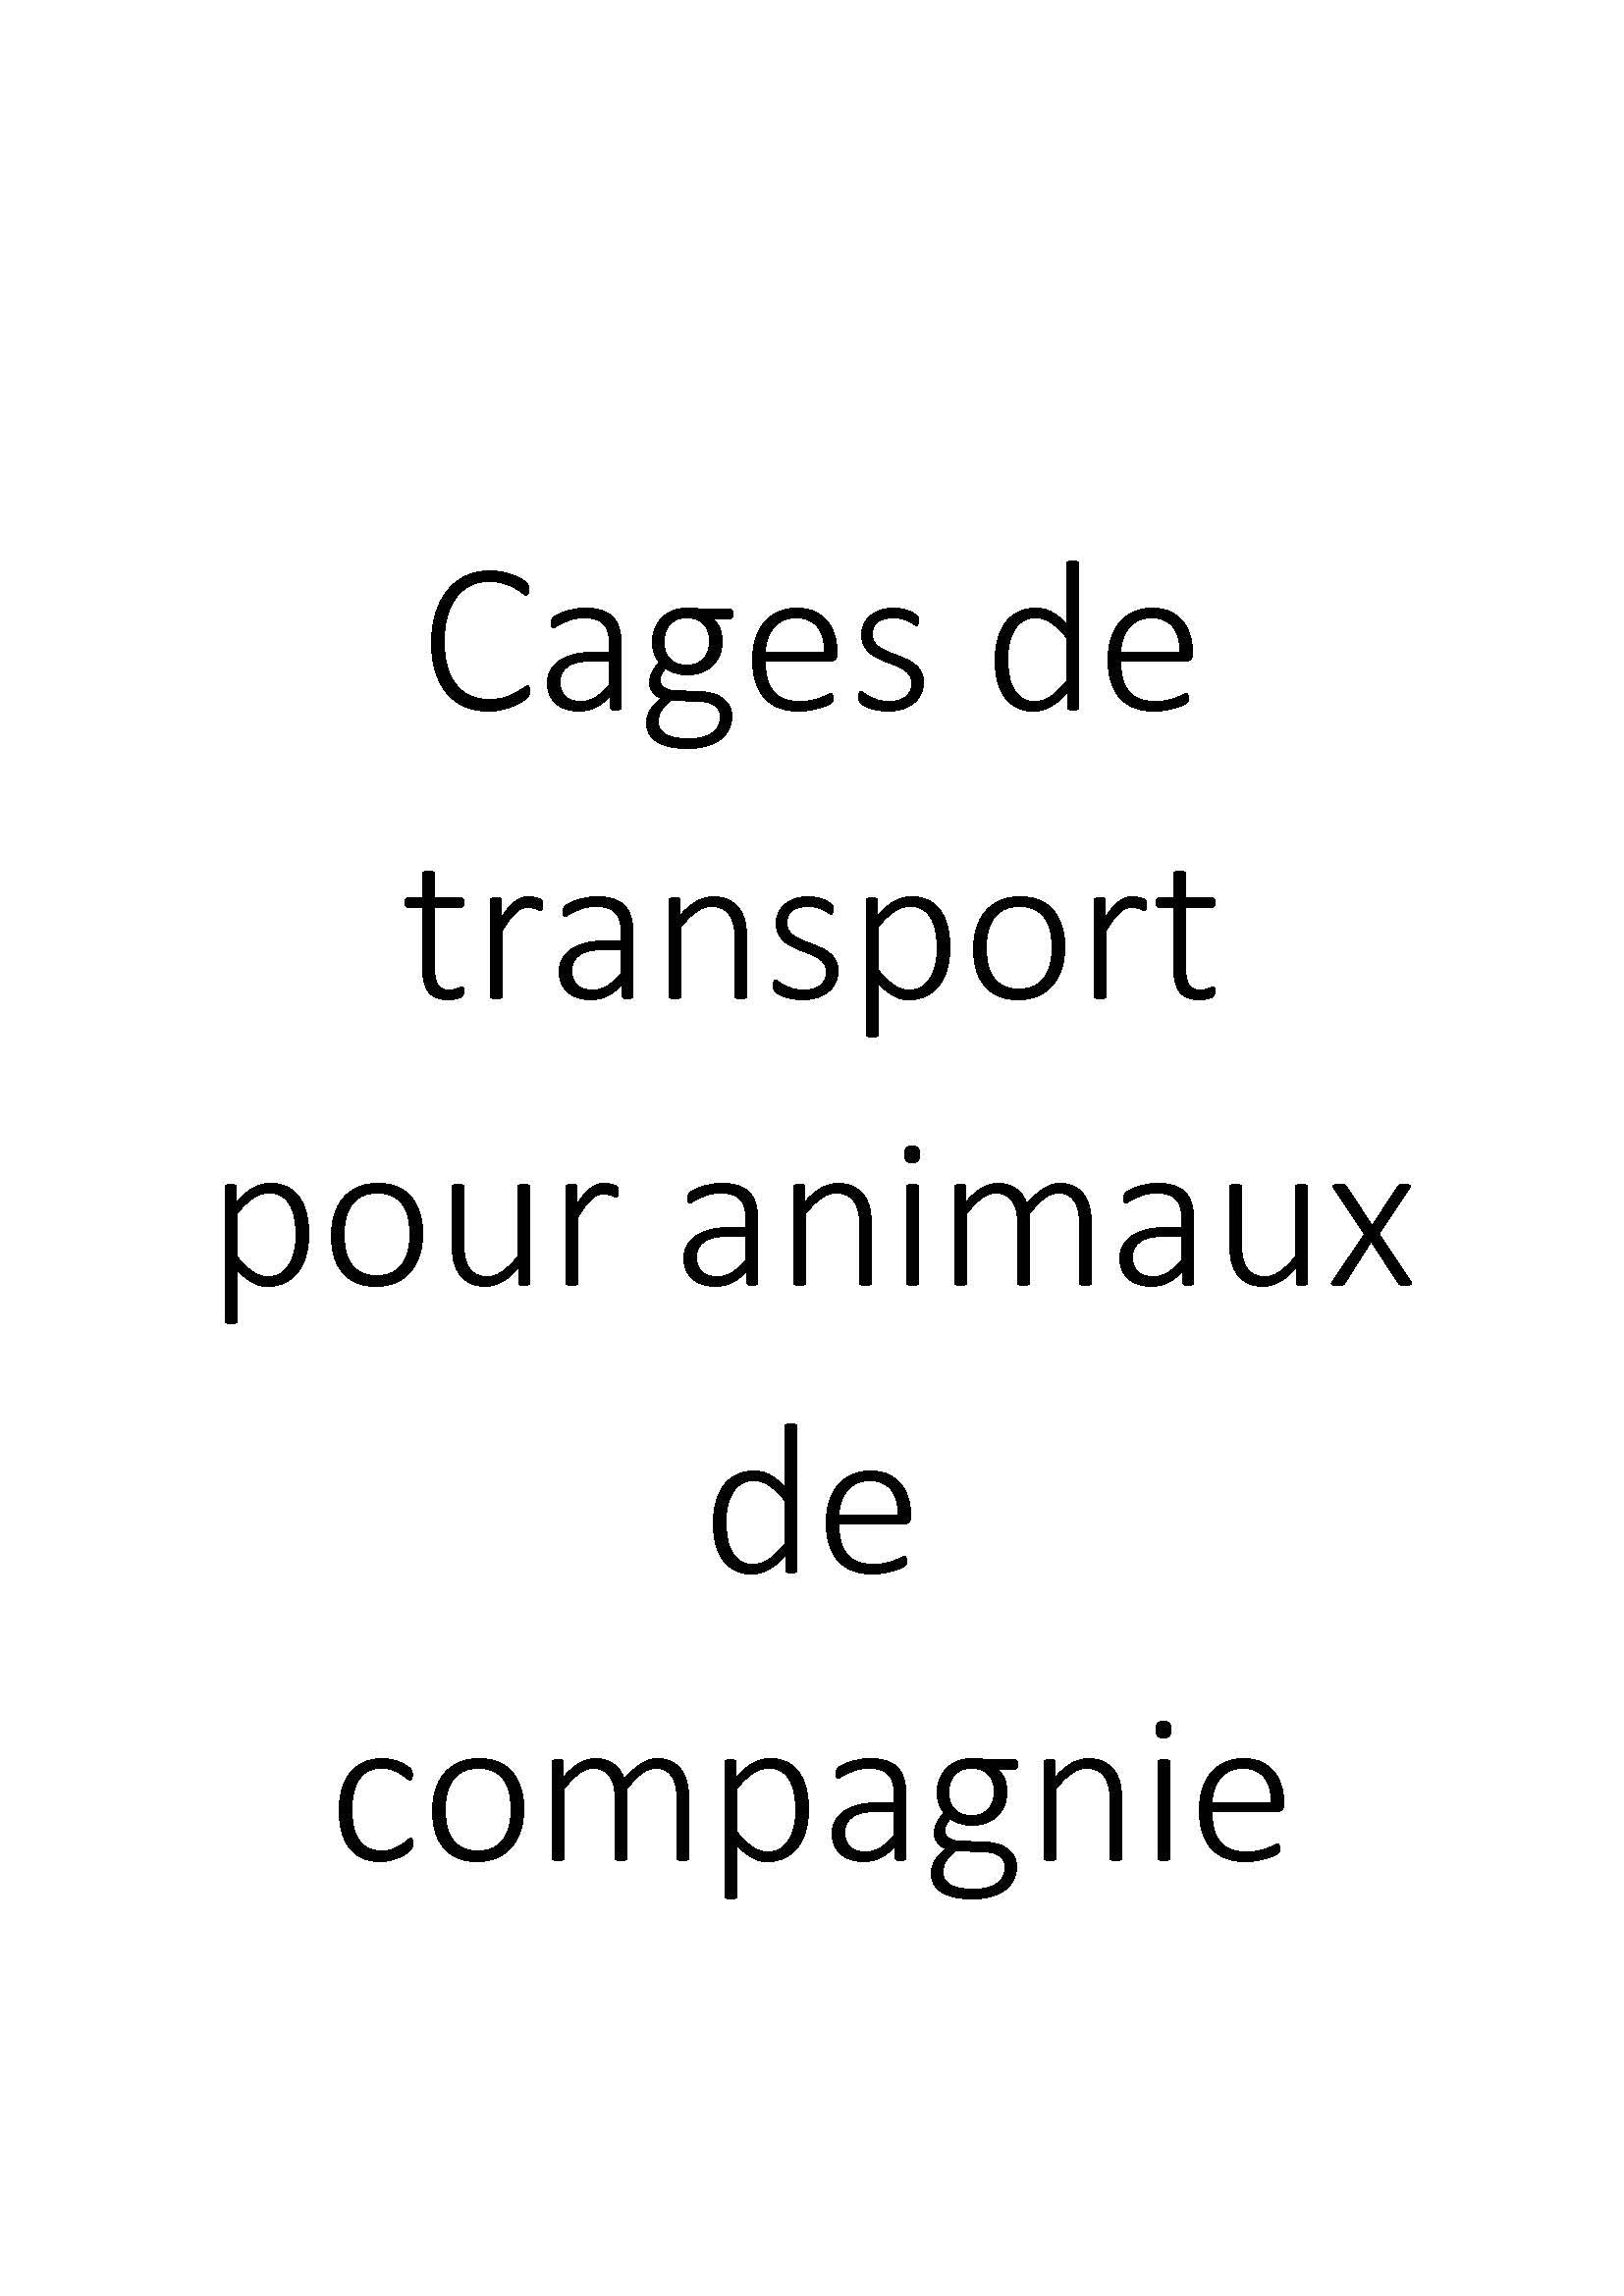 Cages de transport pour animaux de compagnie clicktofournisseur.com